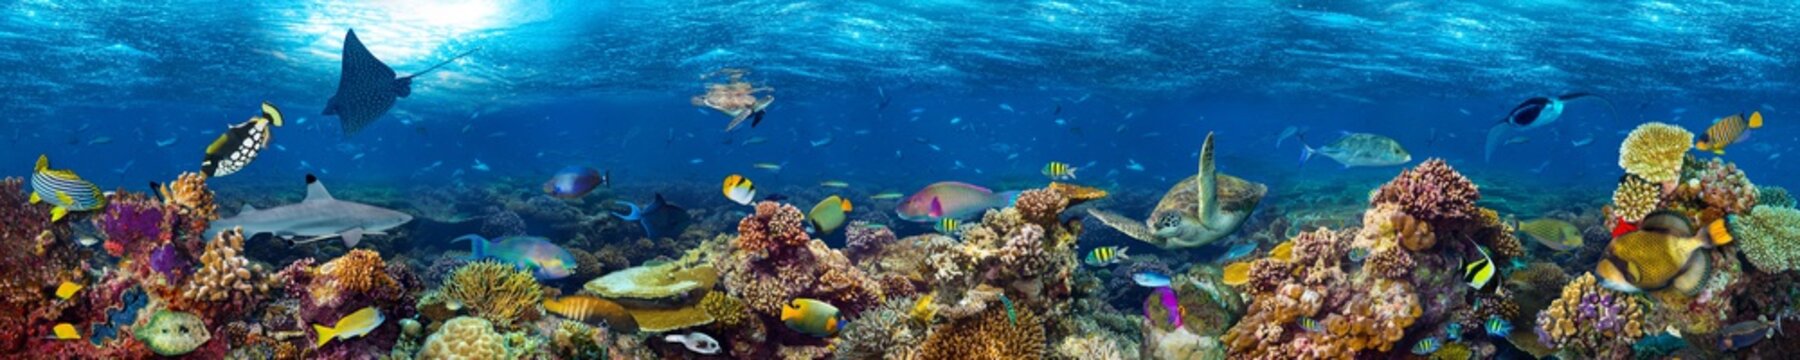 Fototapeta kolorowe super szerokie podwodne rafa koralowa panorama transparent tło z wielu ryb rekin żółw i życia morskiego